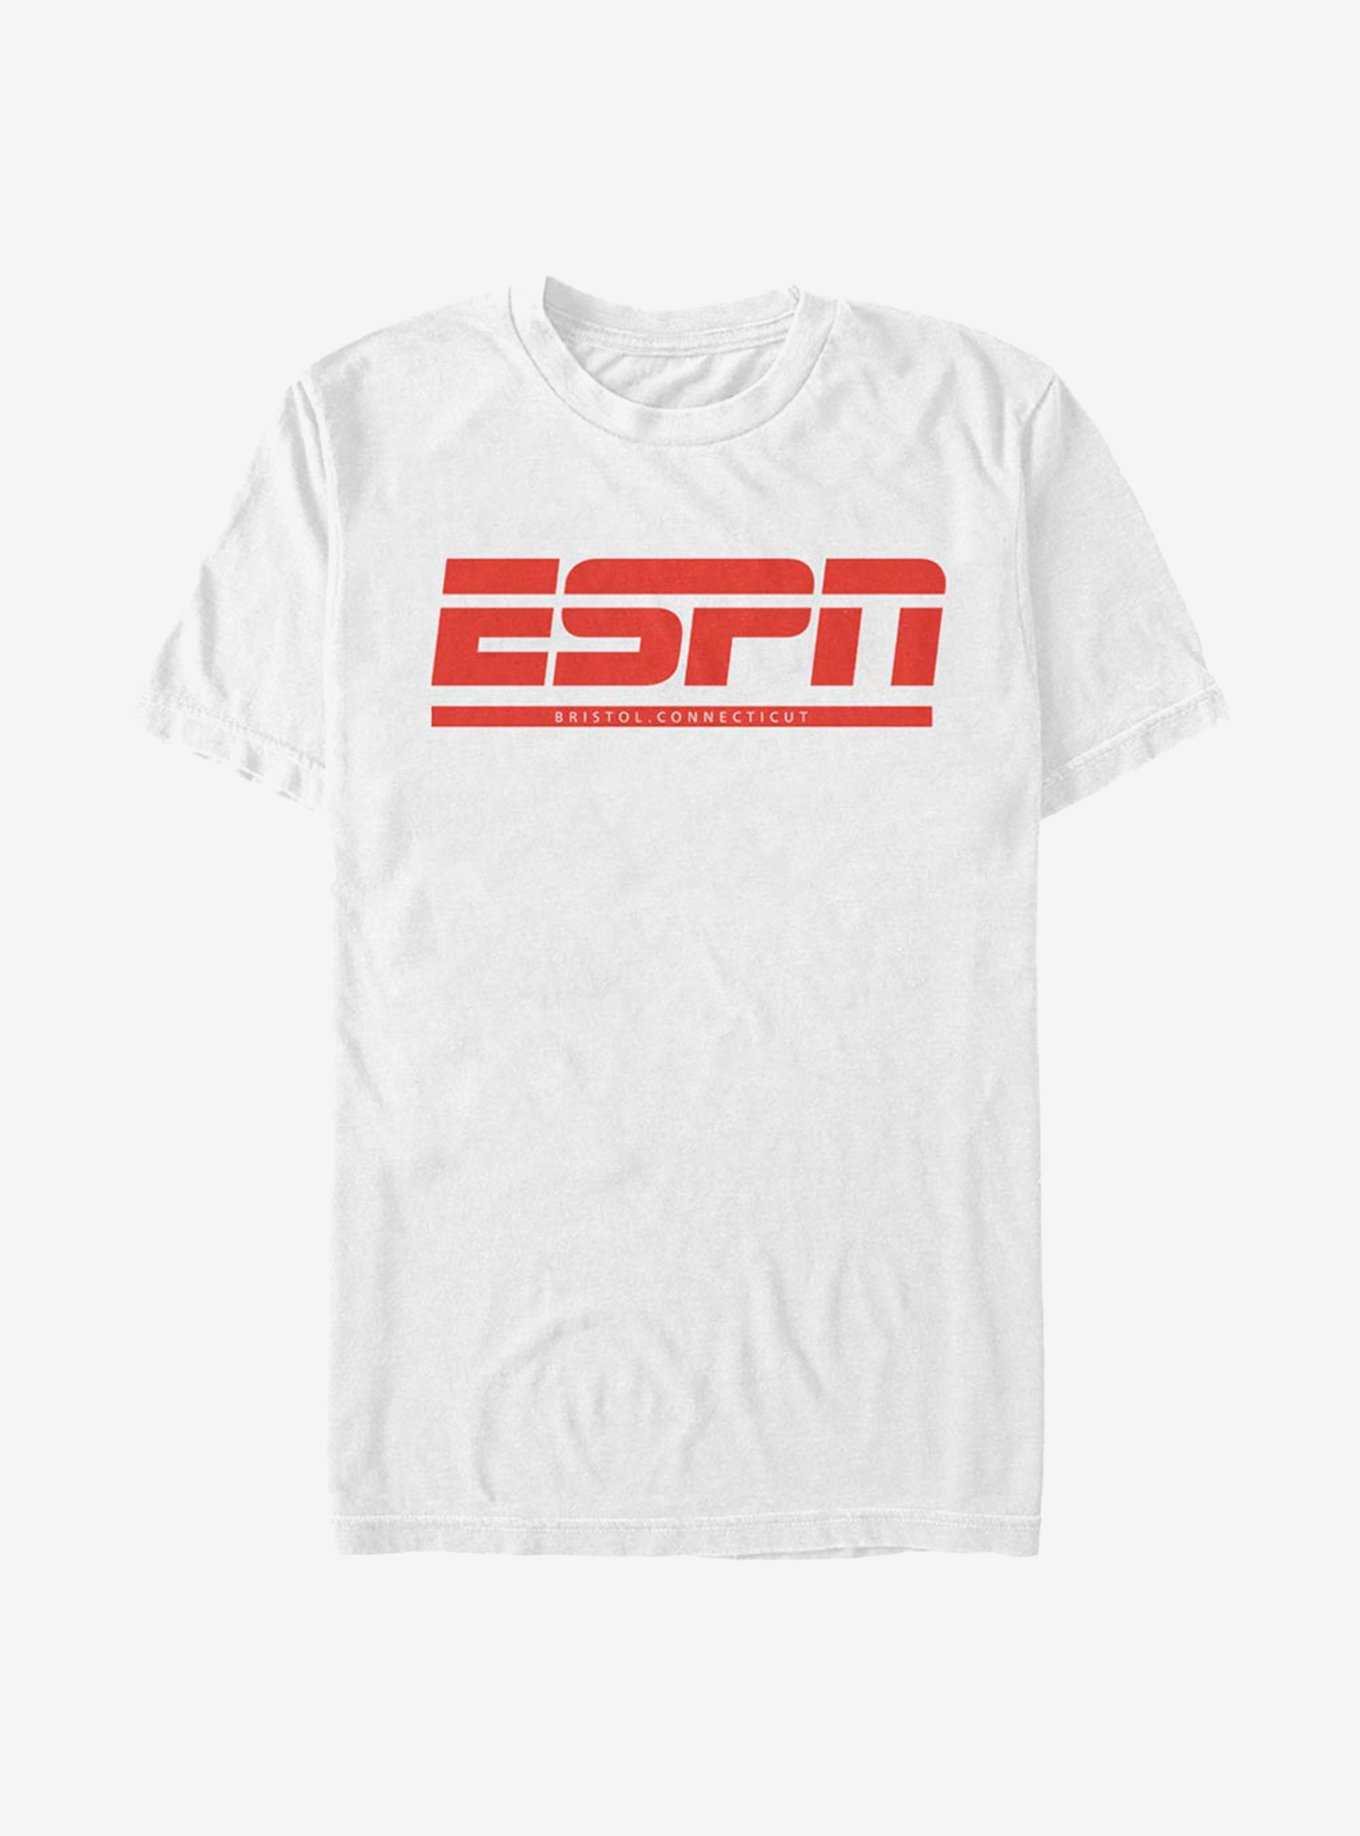 ESPN Bristol T-Shirt, WHITE, hi-res